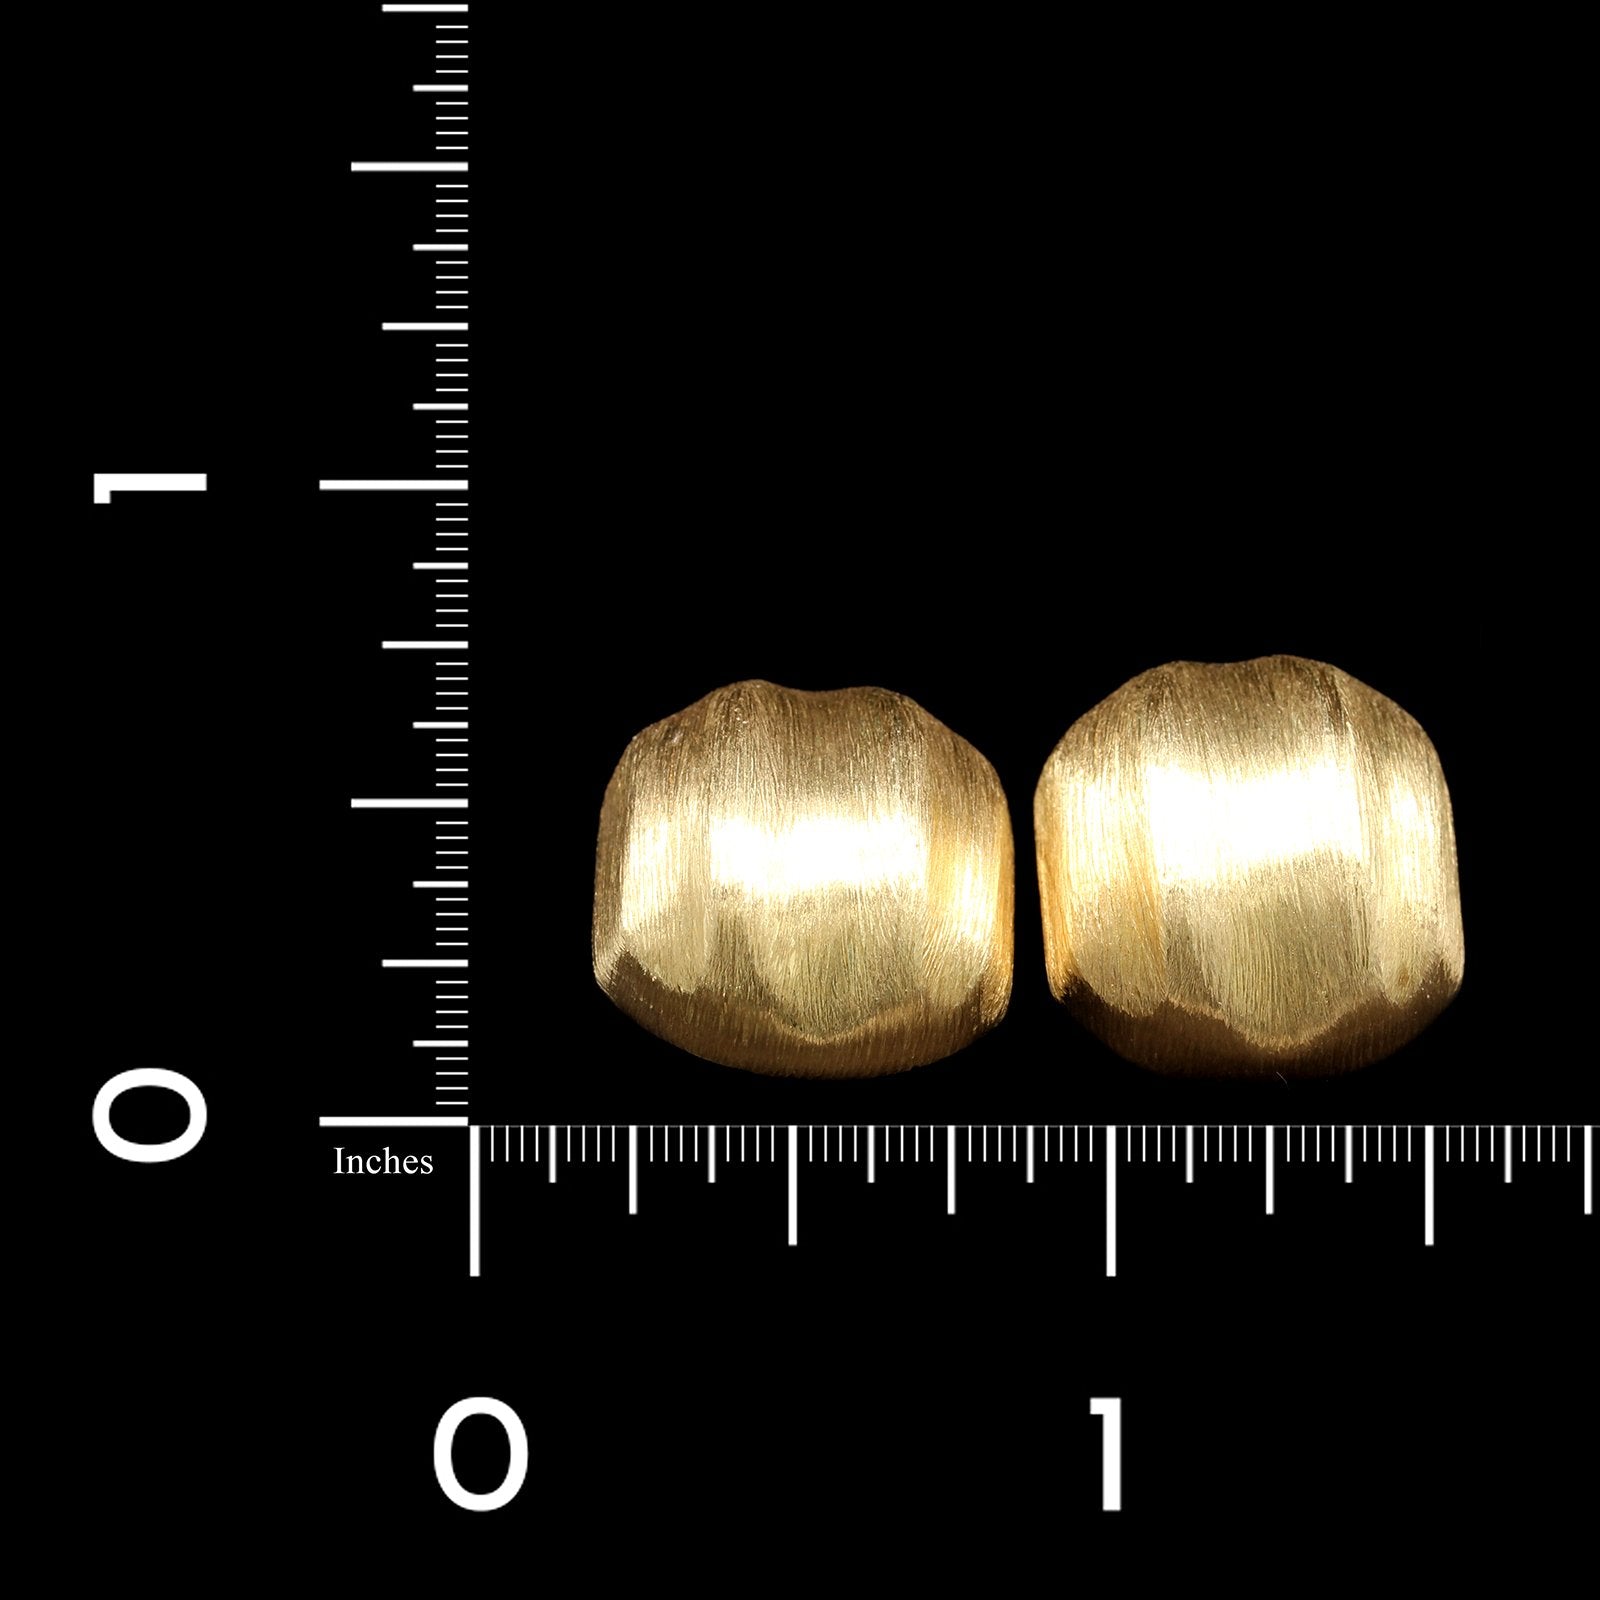 18K Yellow Gold Estate Earrings